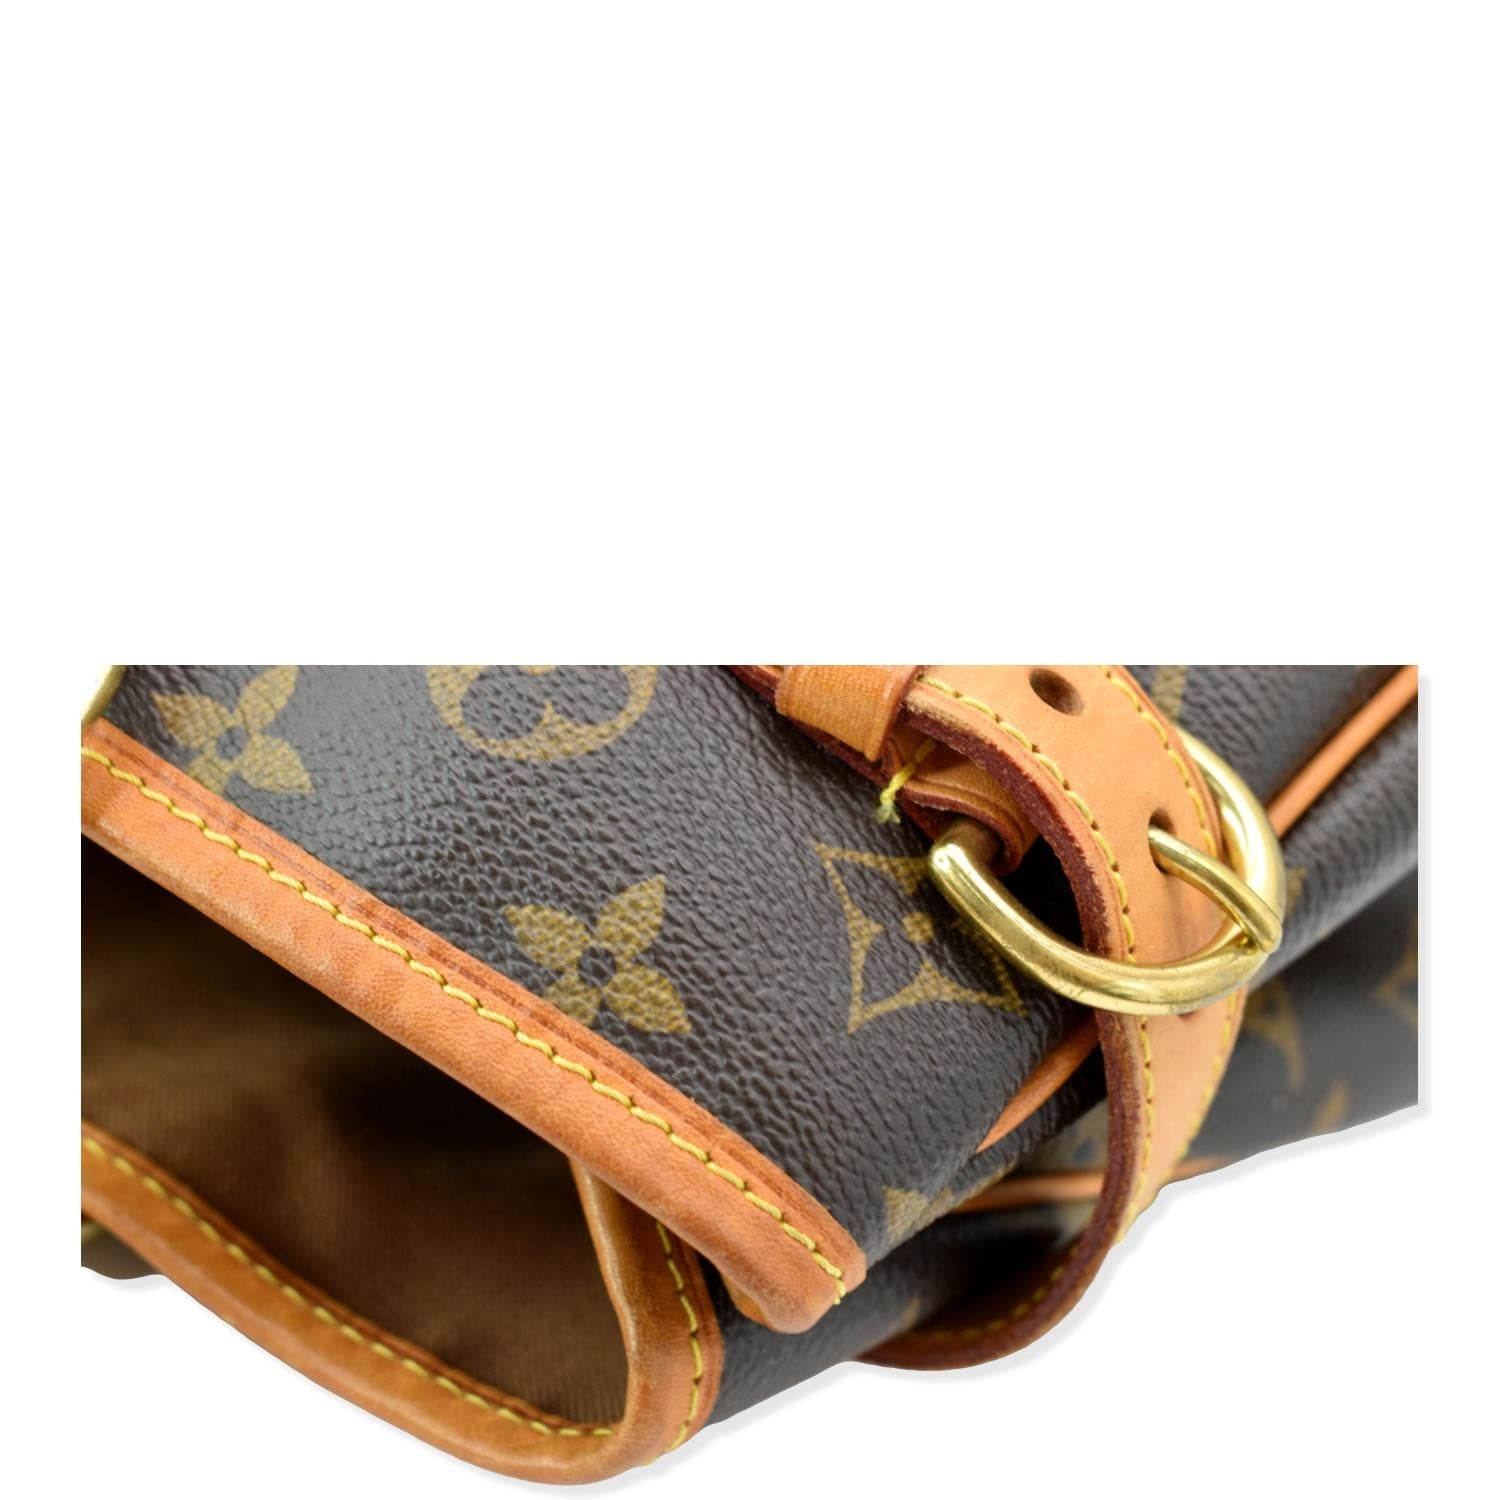 Batignolles cloth handbag Louis Vuitton Brown in Cloth - 38590160